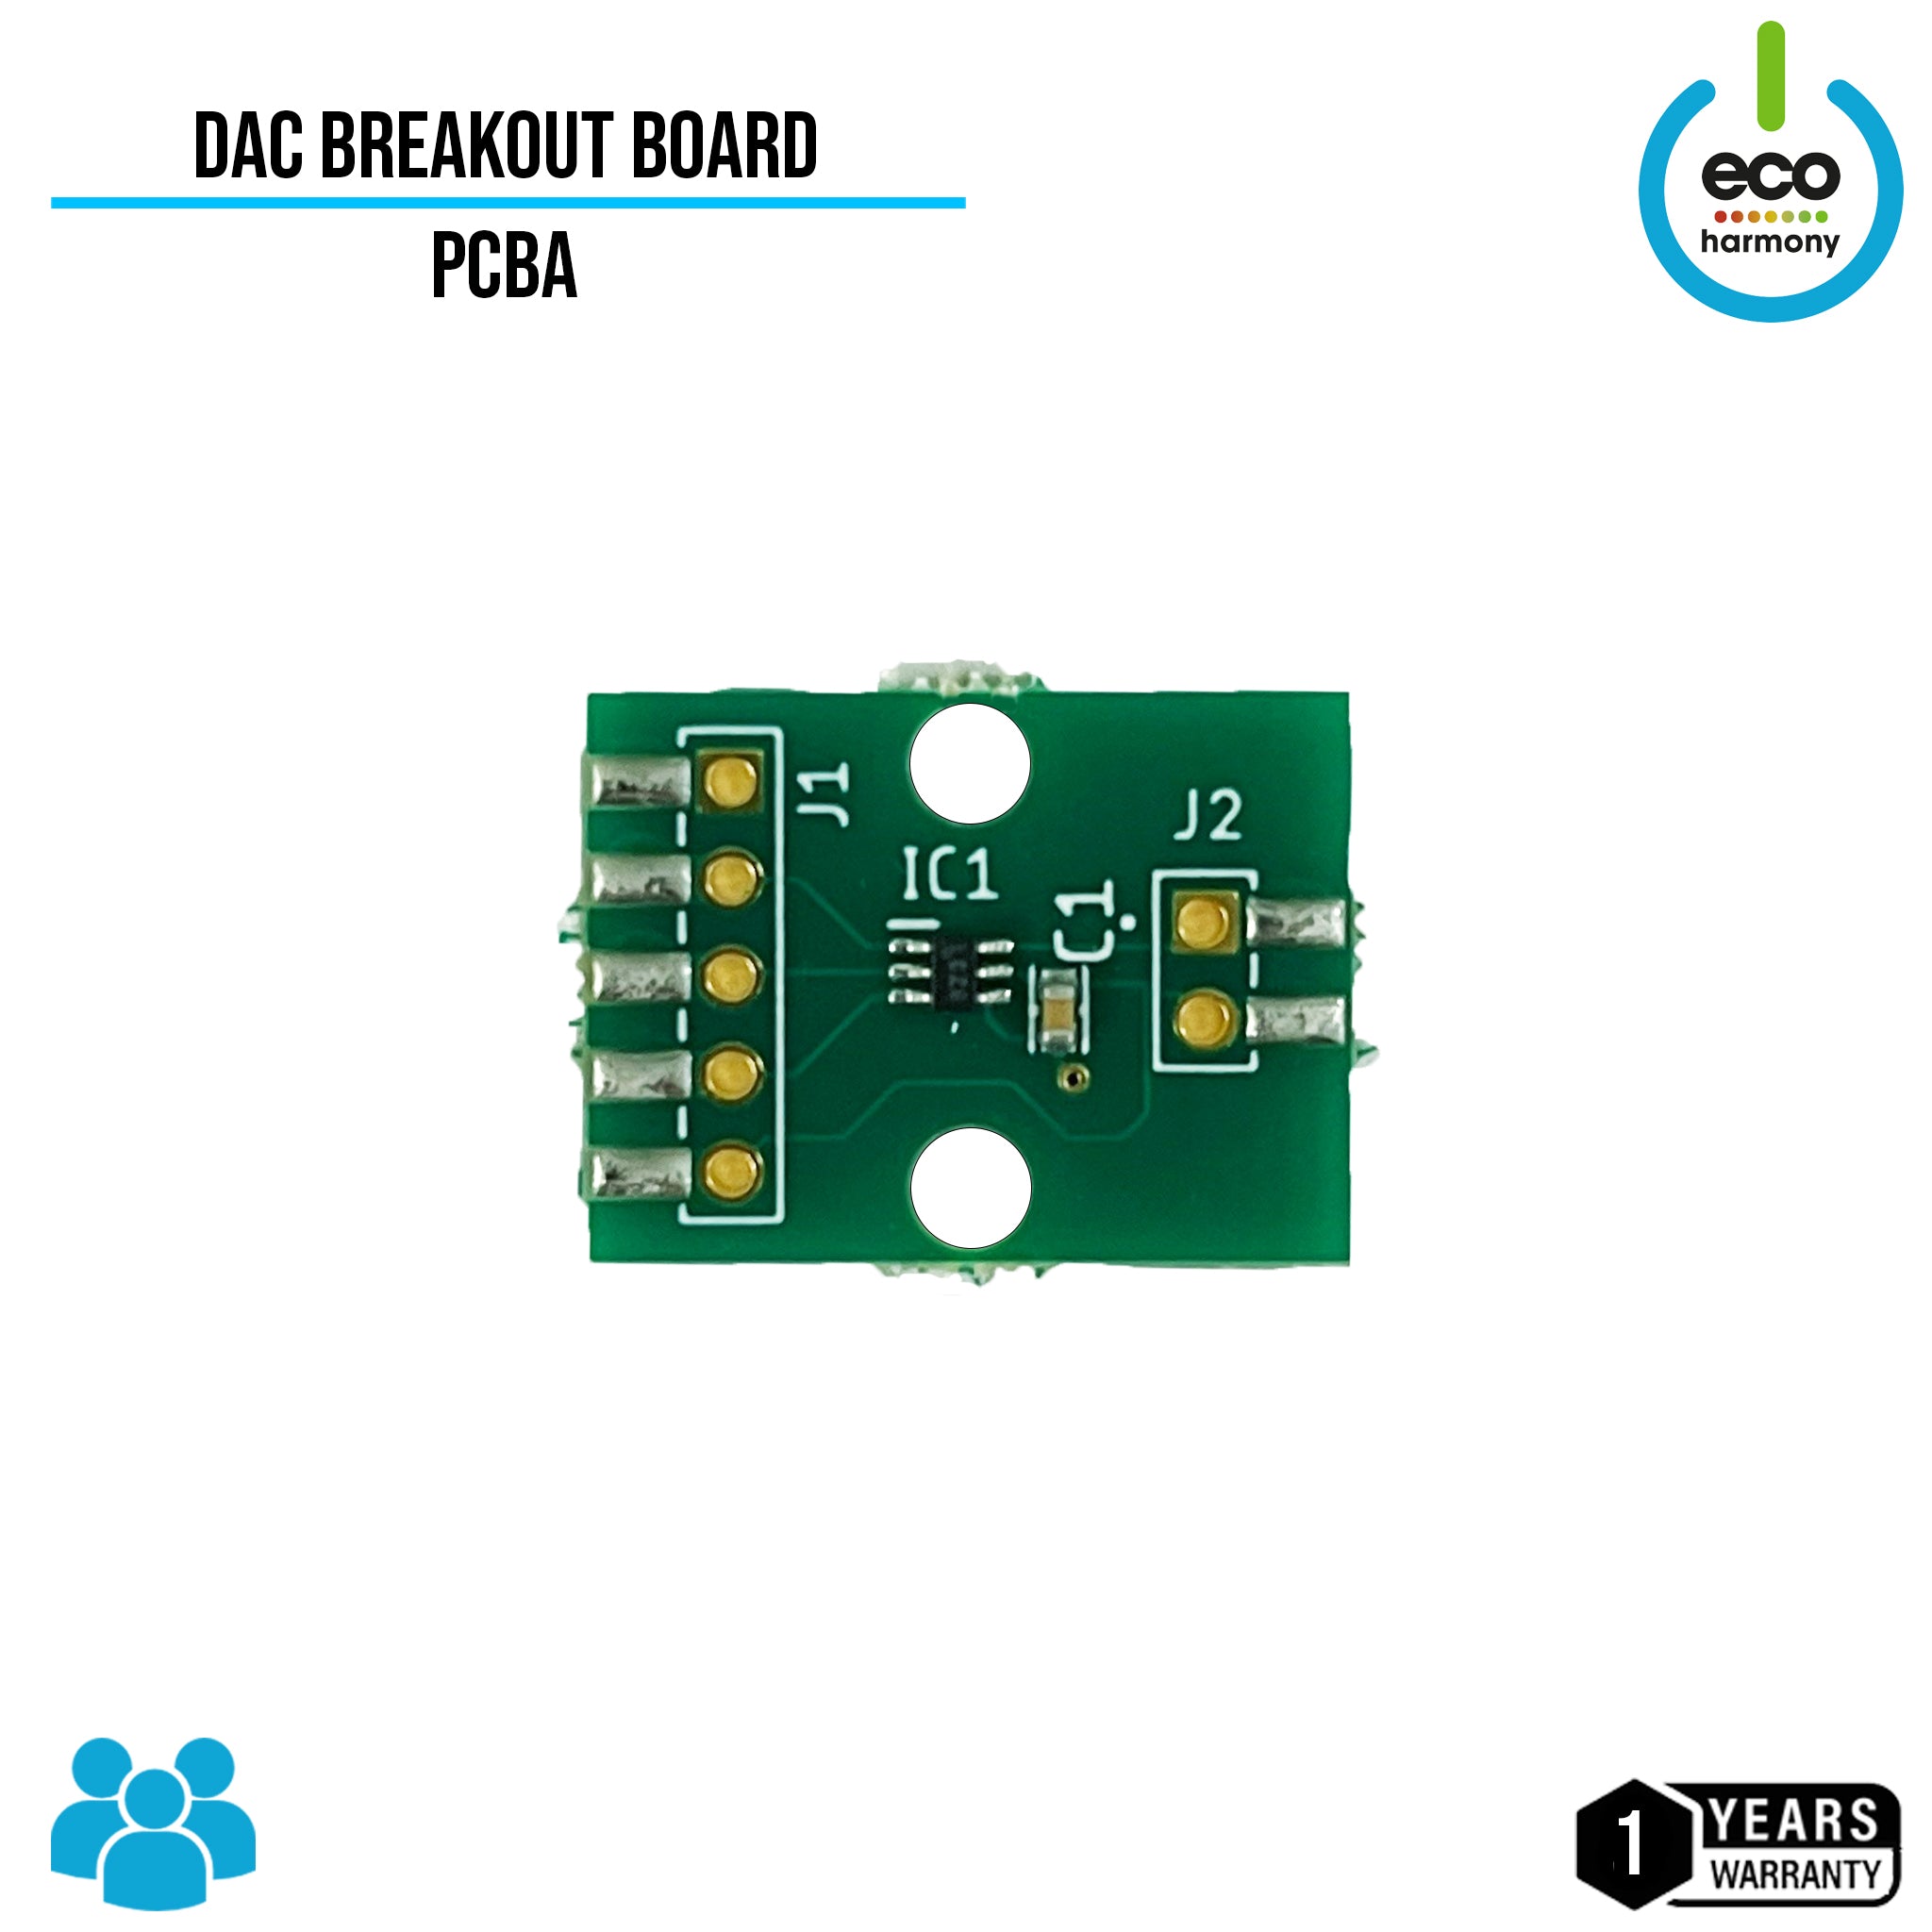 DAC Breakout Board